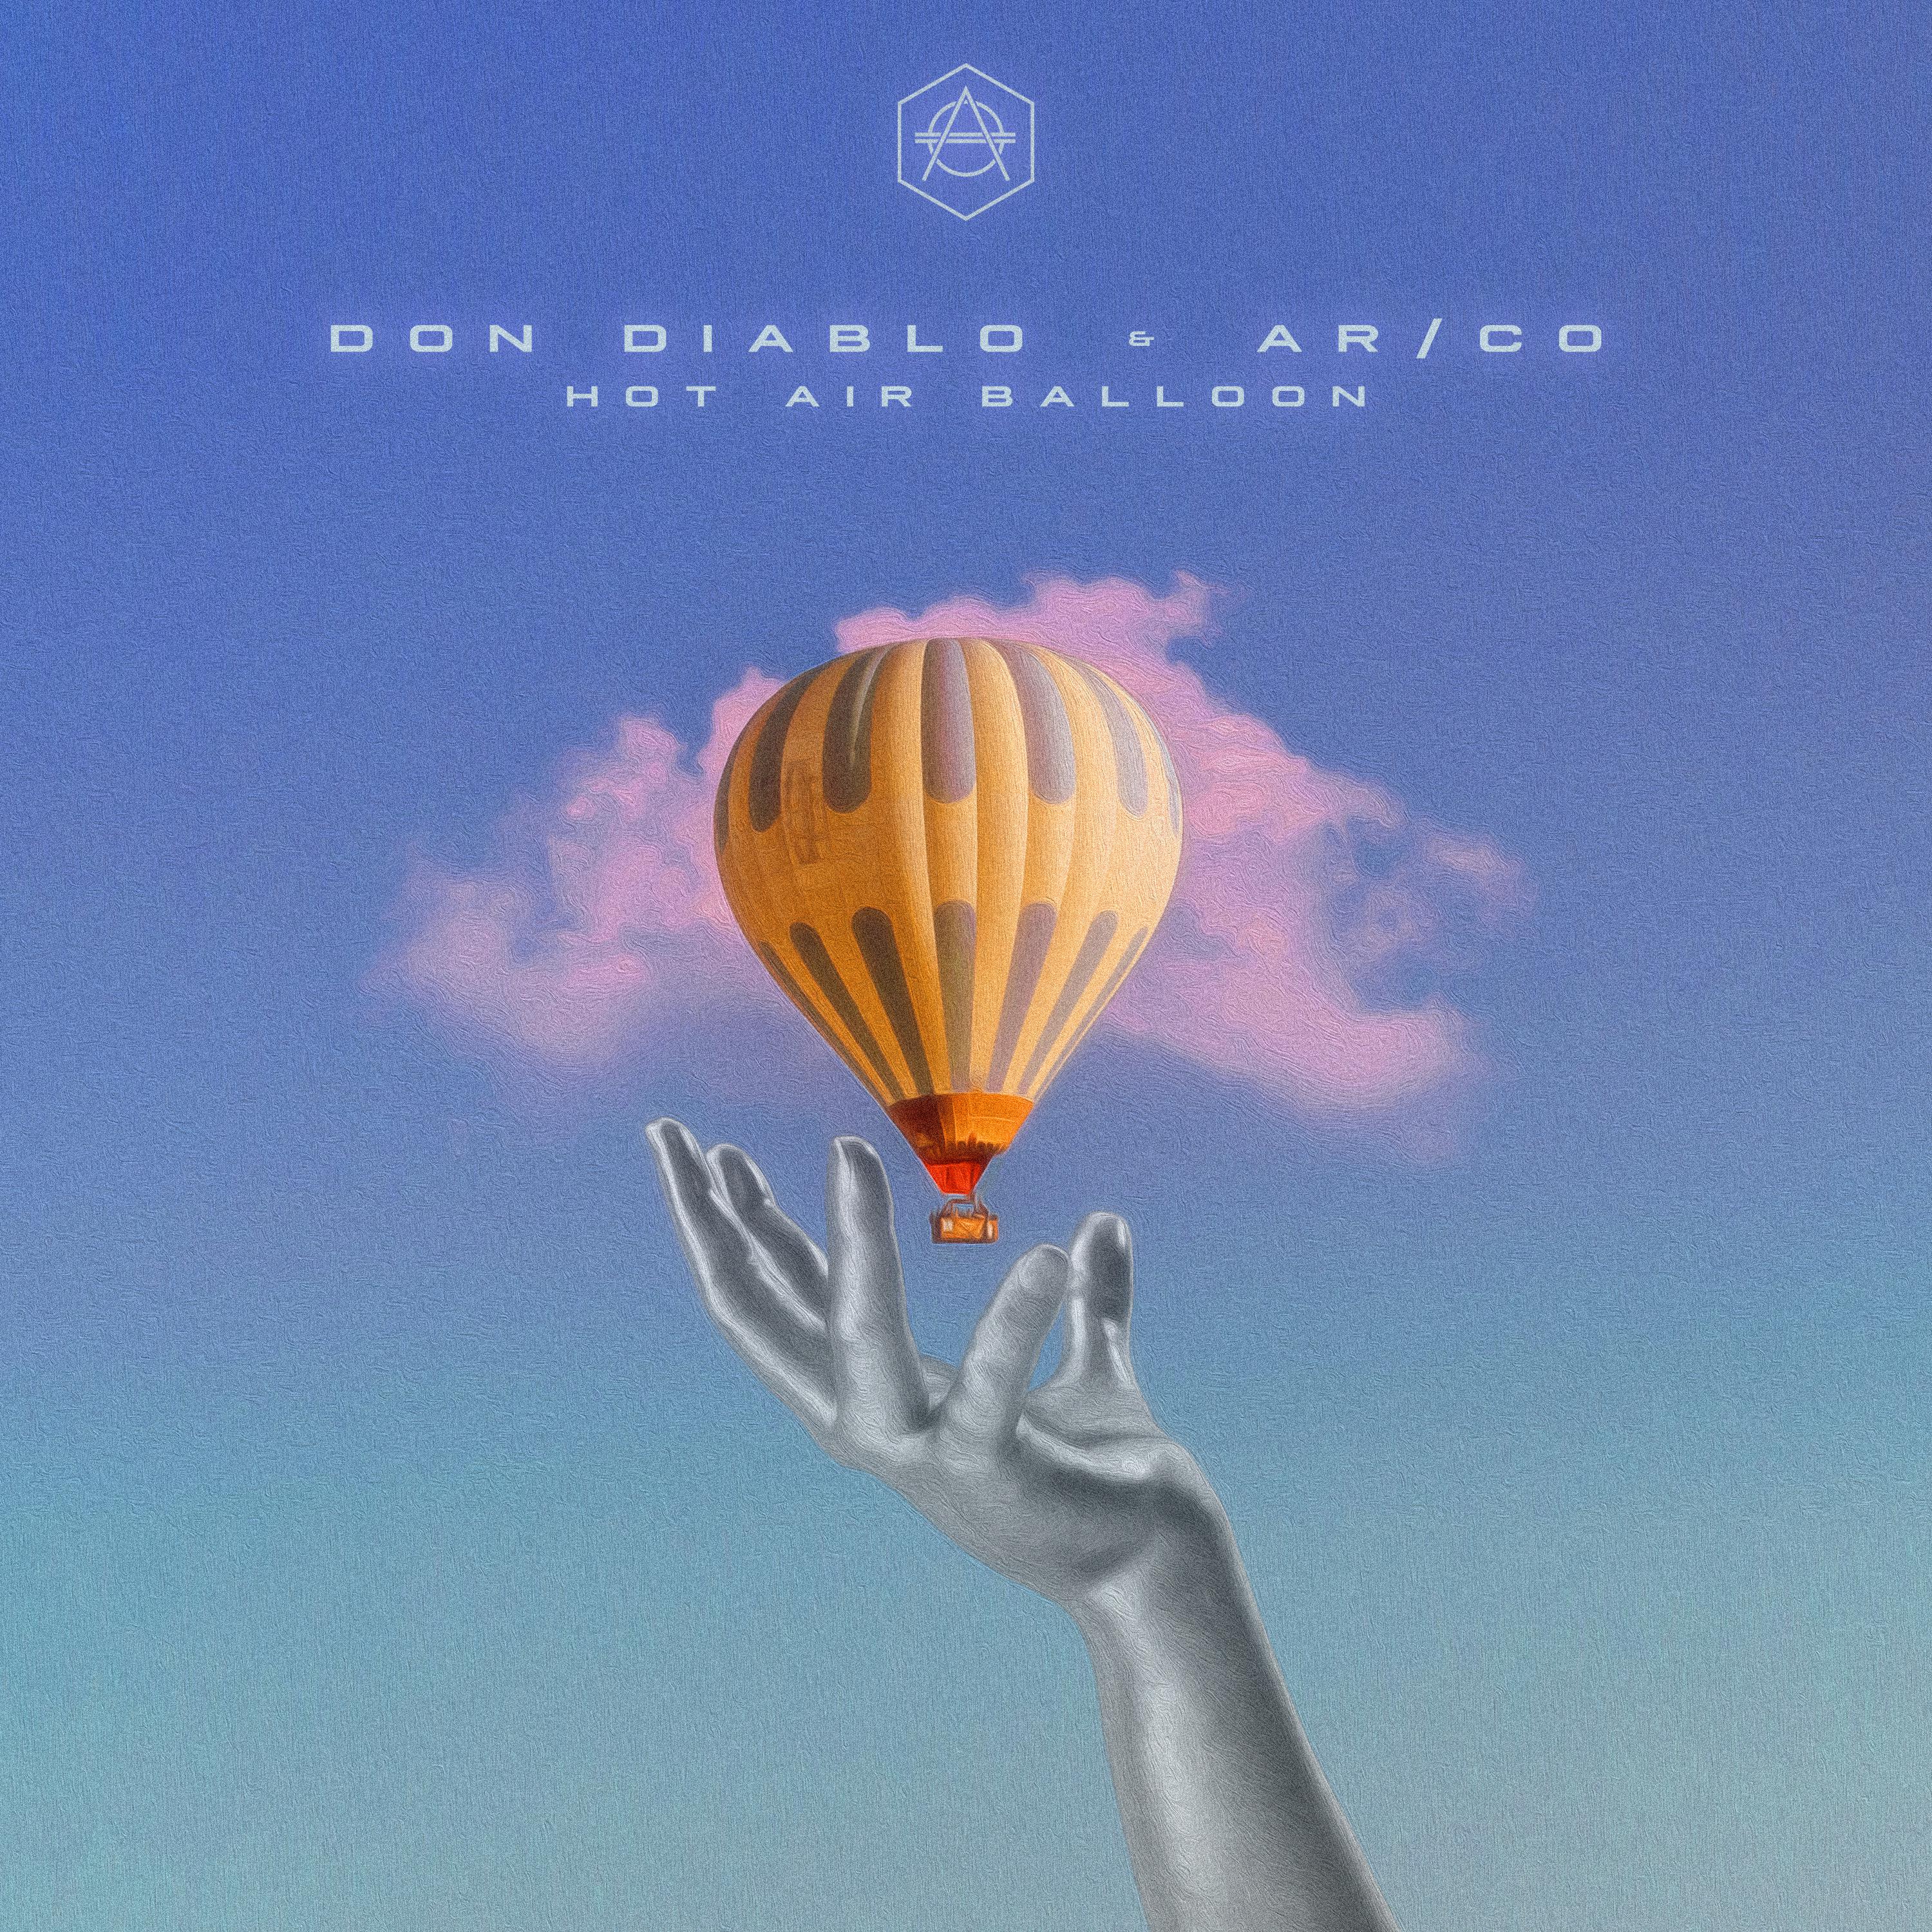 Hot Air Balloon歌词 歌手Don Diablo / AR/CO-专辑Hot Air Balloon-单曲《Hot Air Balloon》LRC歌词下载